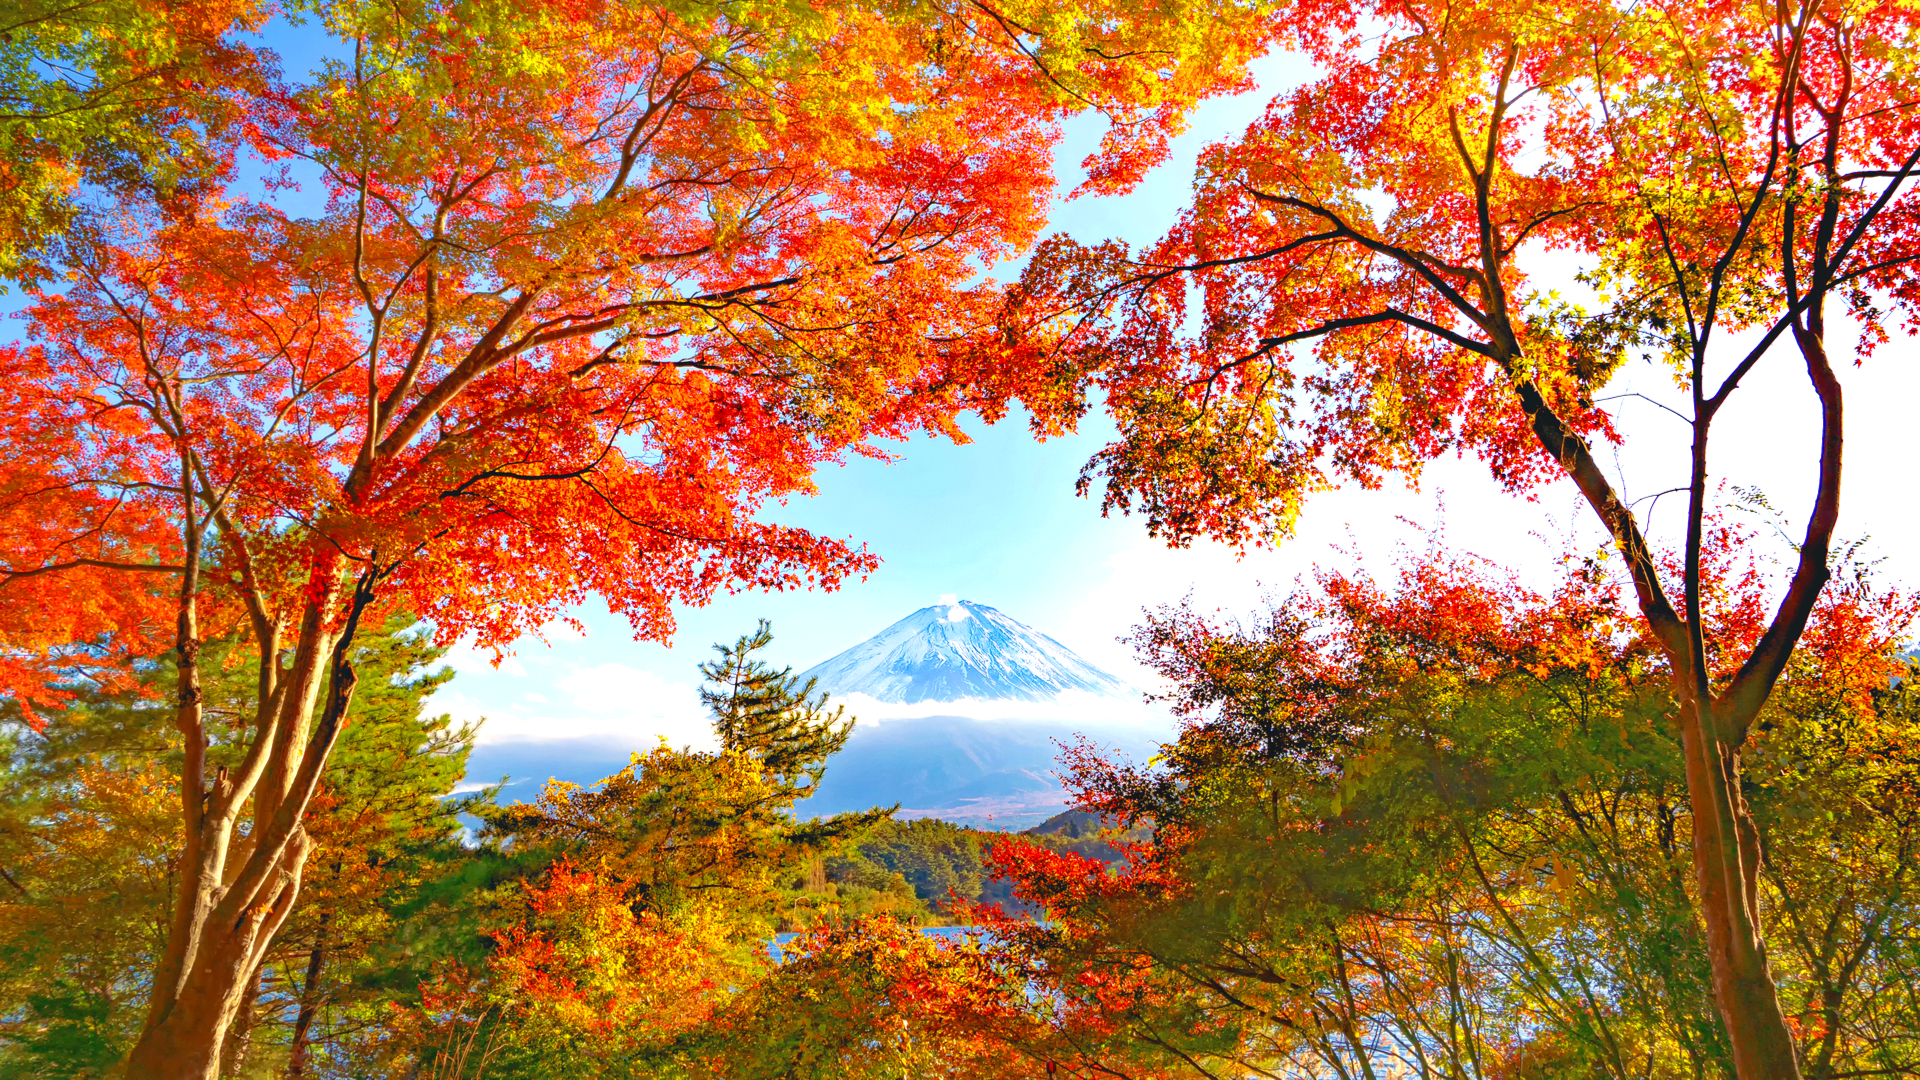 富士山を彩る絶景のアート作品 山梨県 もみじトンネル で秋を満喫 Trip Editor